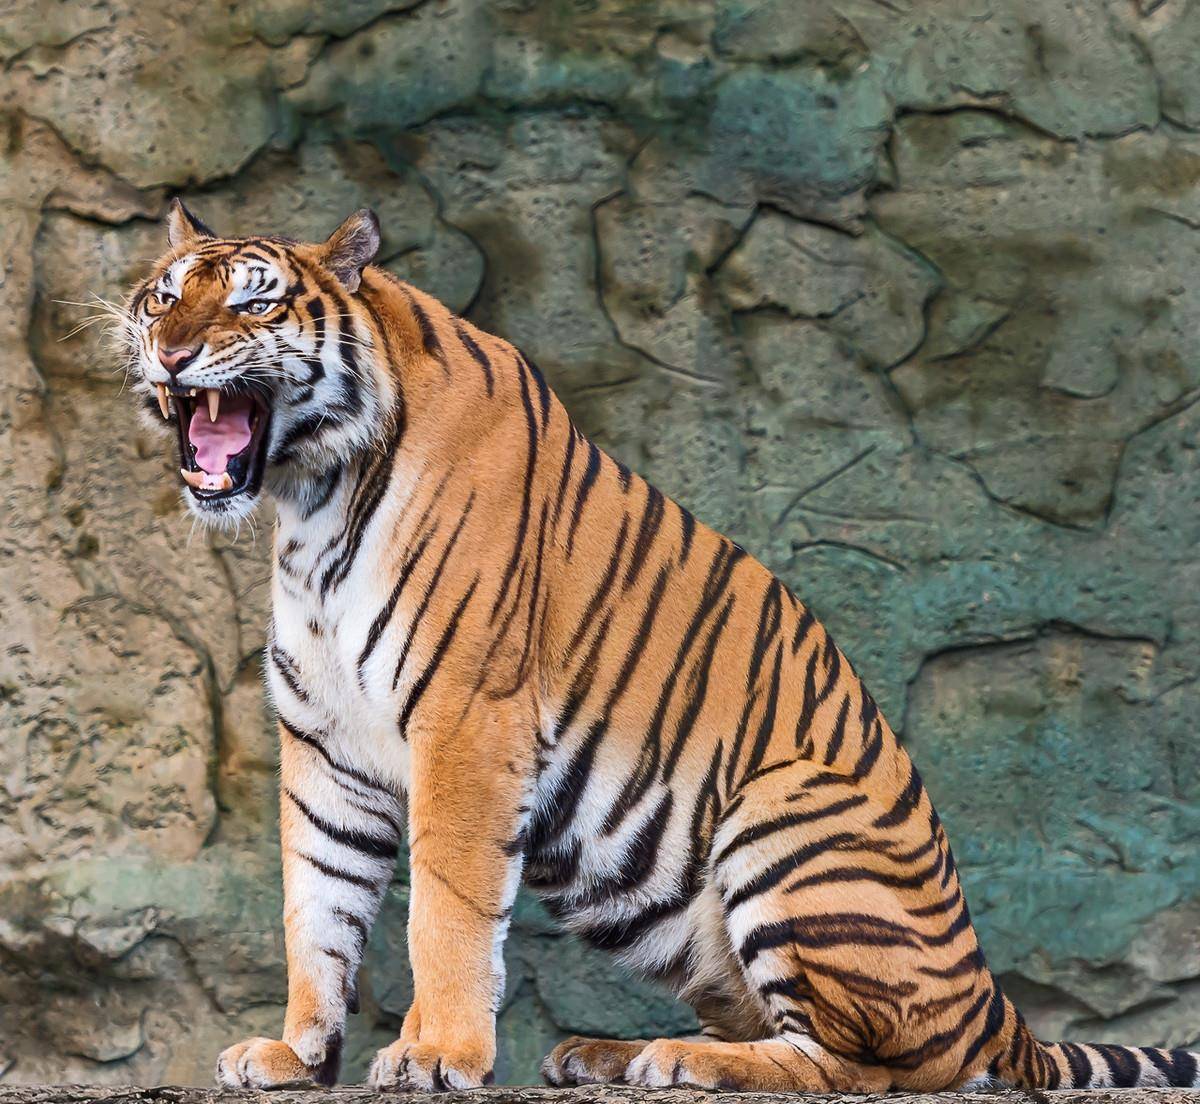 原创一男子在私人动物园被老虎咬,在越南养老虎当宠物竟然合法?